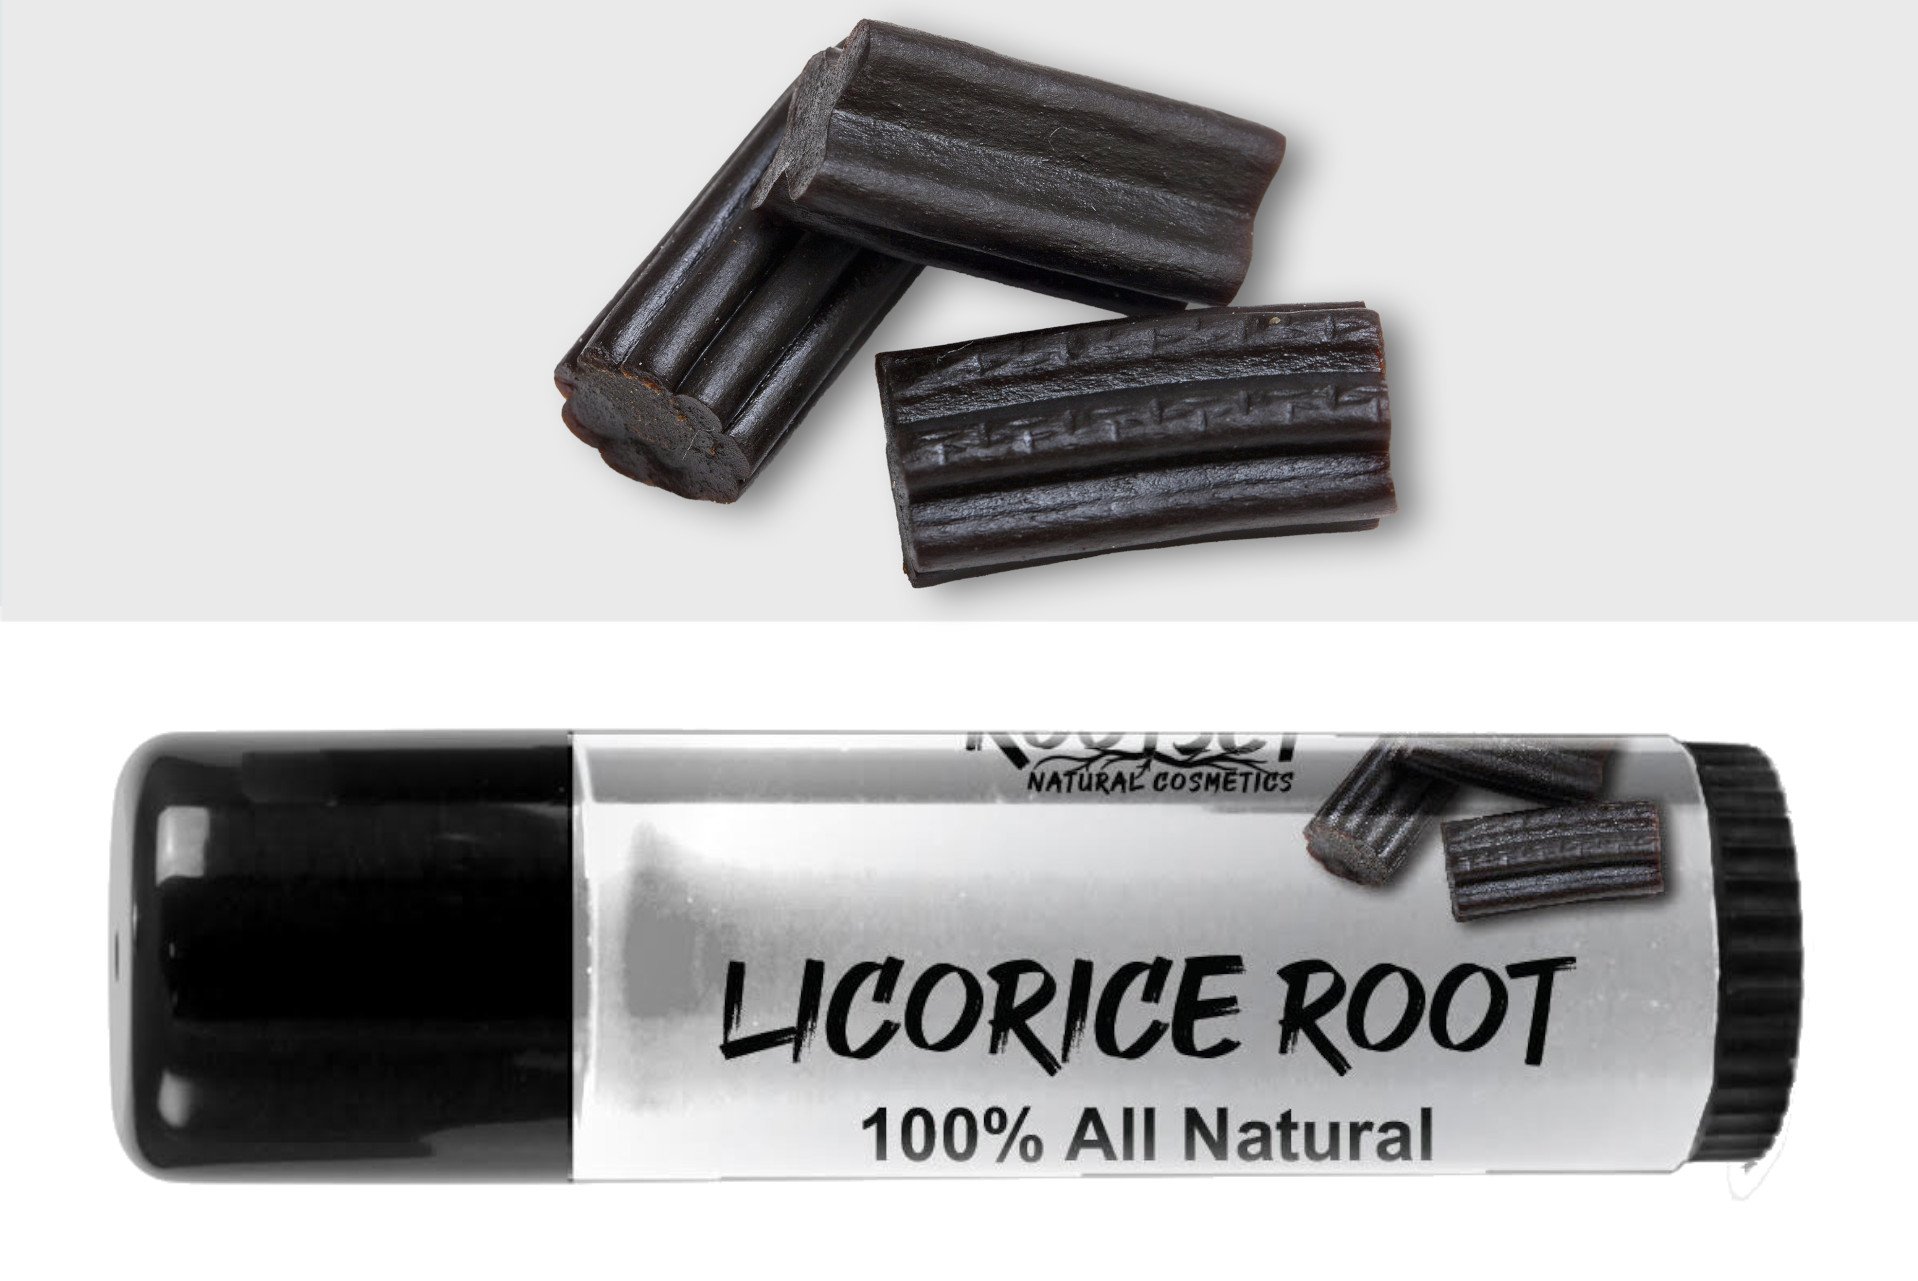 Licorice Root Jumbo 100% All Natural Lip & Body Balm.jpg